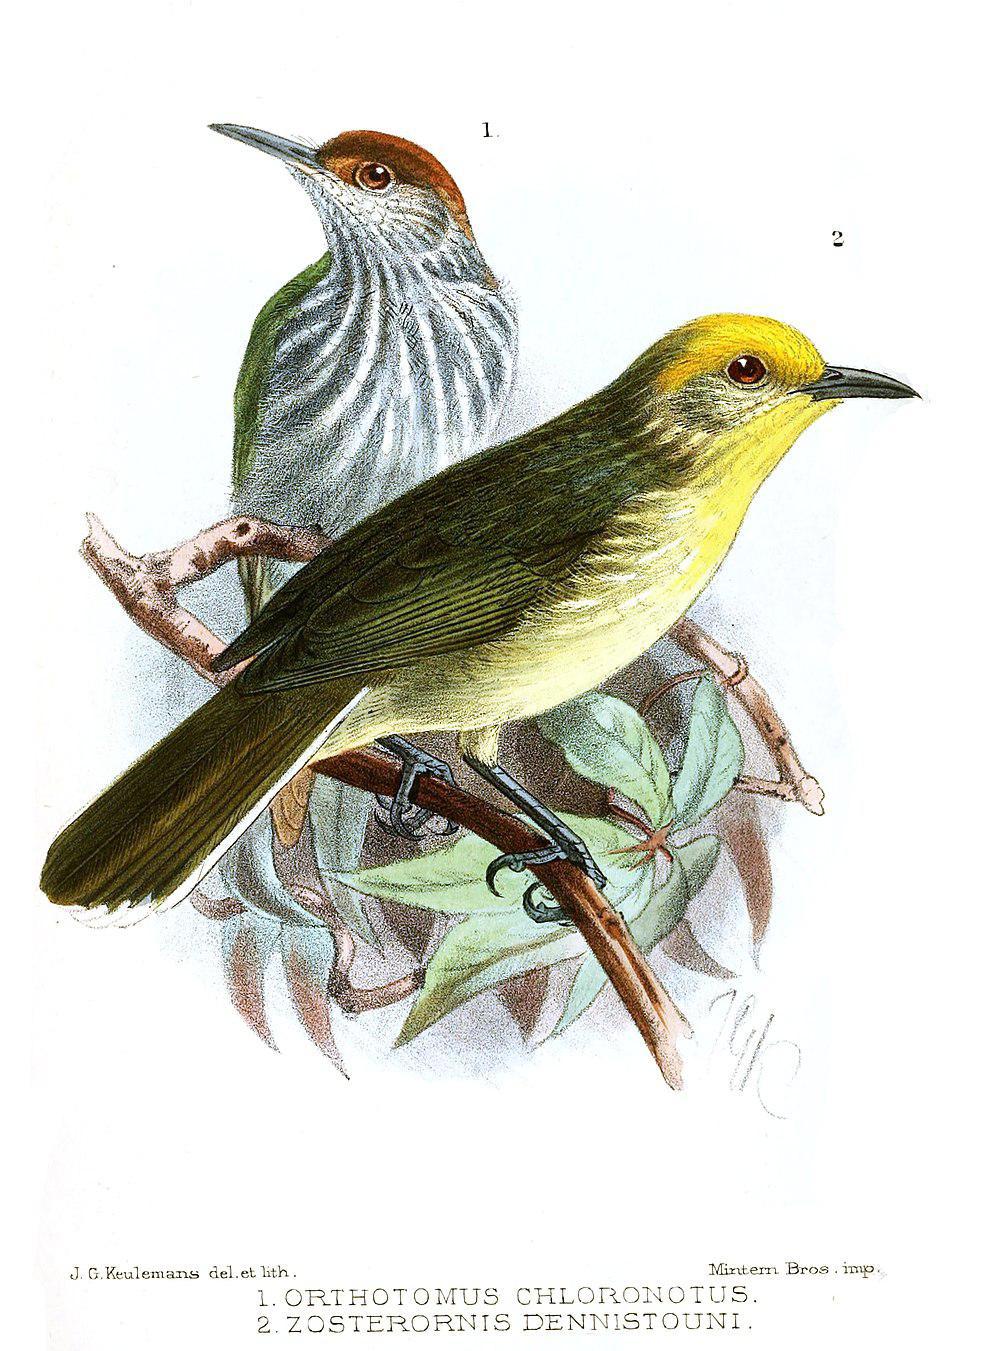 绿背缝叶莺 / Trilling Tailorbird / Orthotomus chloronotus